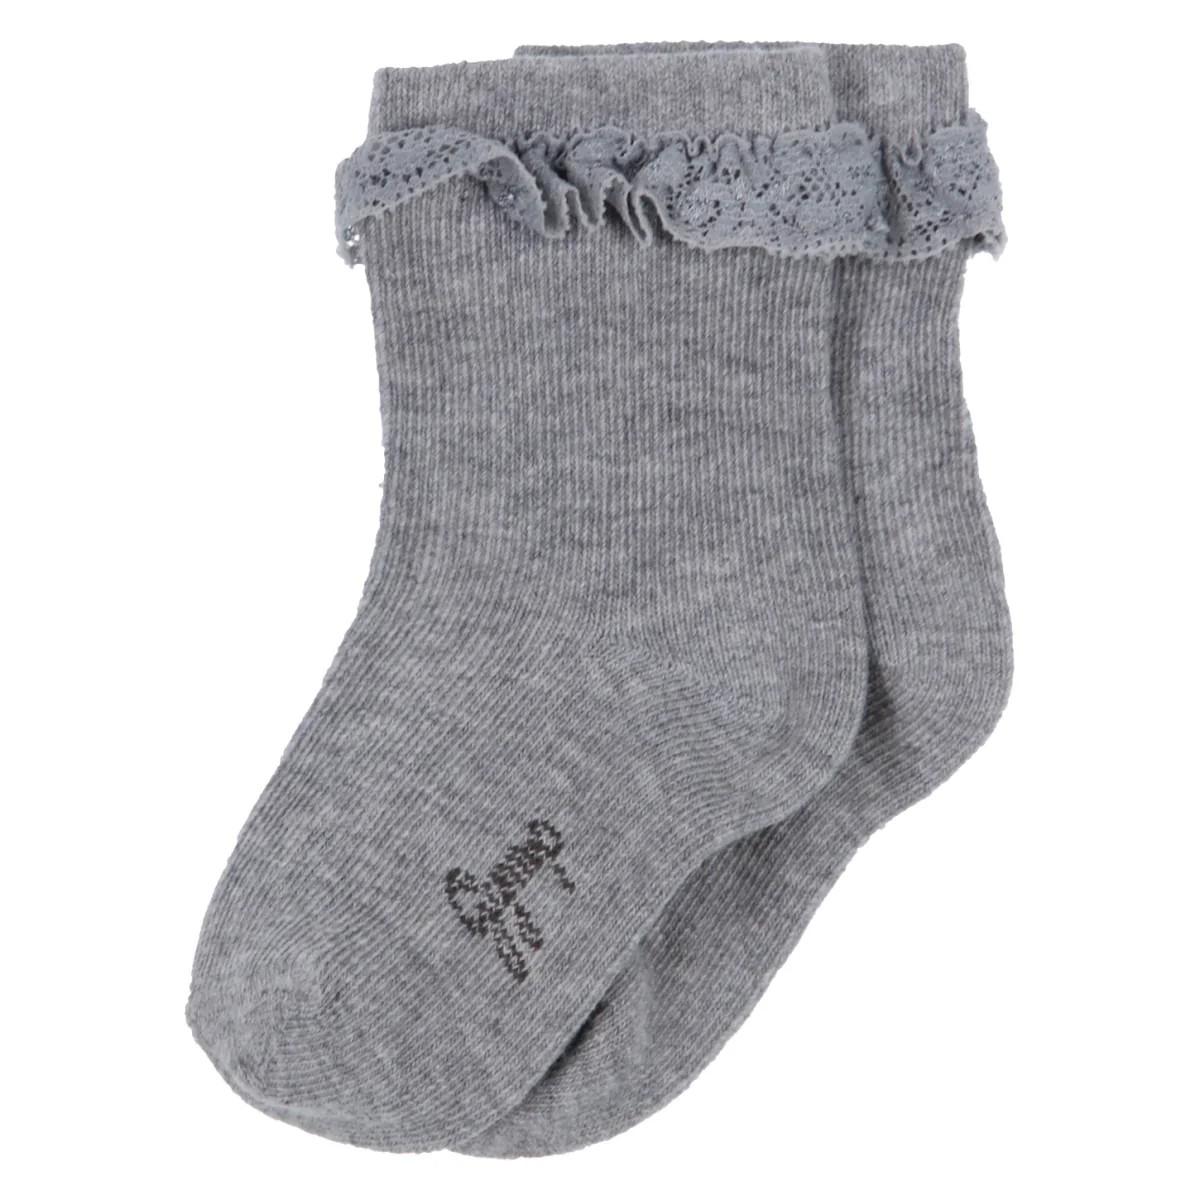 Gymp - Meisjes sokken keit grey melange